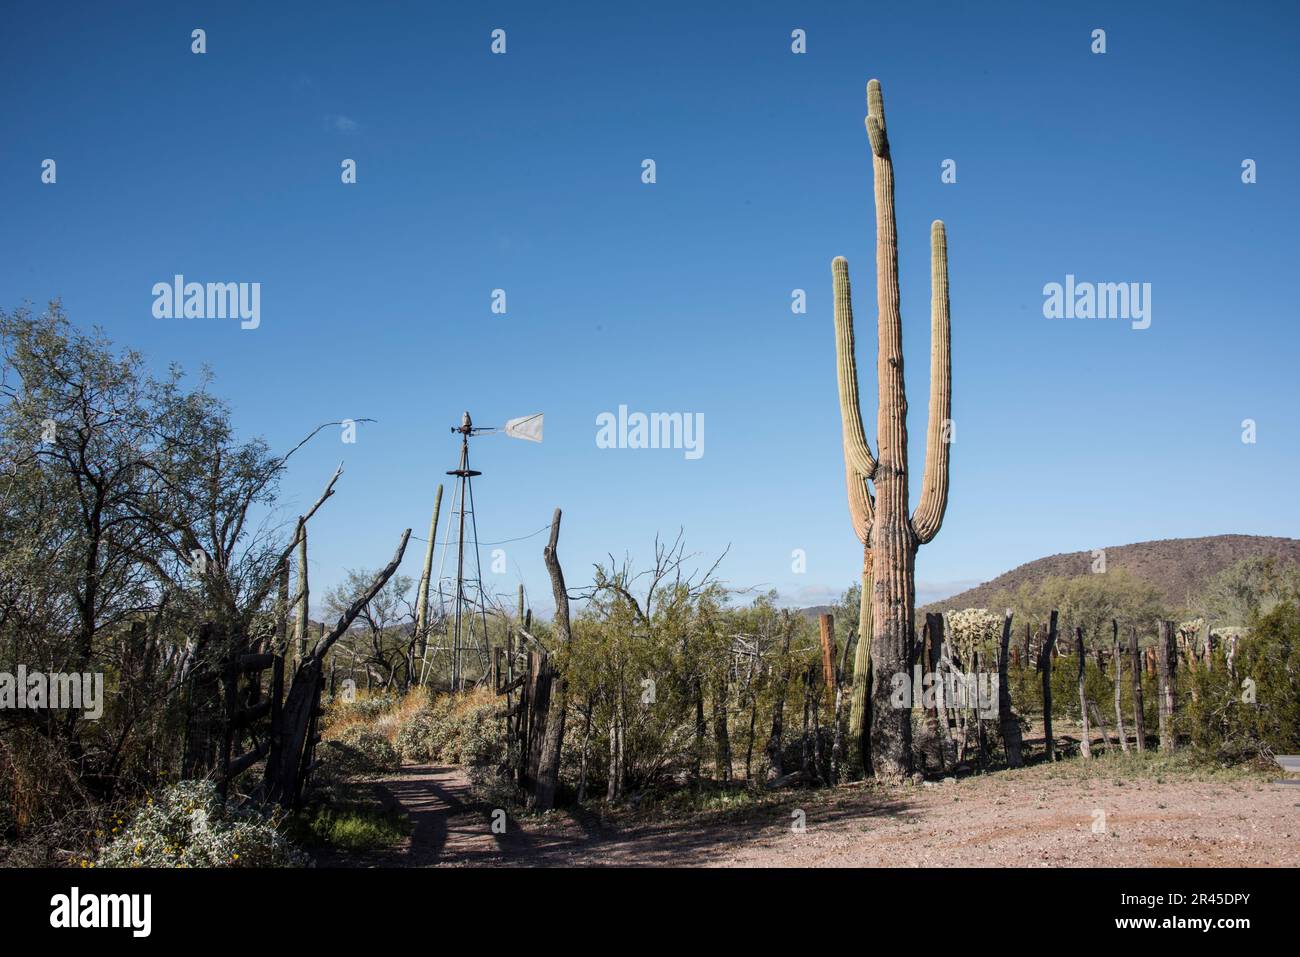 Bonita Well historique, une oasis historique dans le désert de Sonoran, Organ Pipe Cactus National Monument, Ajo, Lukeville, Arizona, Etats-Unis Banque D'Images